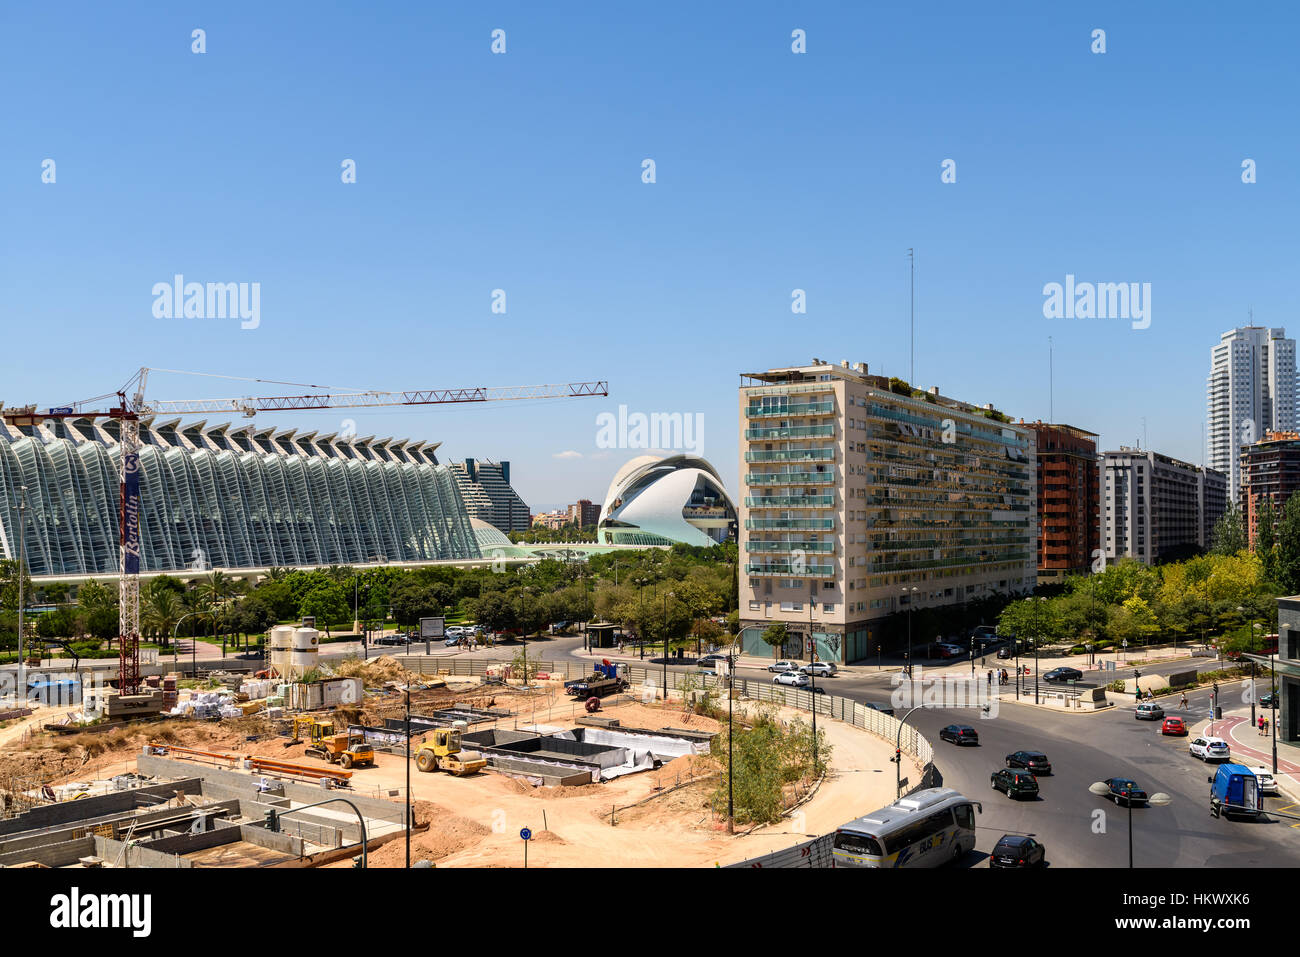 VALENCIA, Spagna - 25 luglio 2016: vista del centro della città di Valencia edifici con Calatrava Città delle Arti e delle scienze in vista. Foto Stock